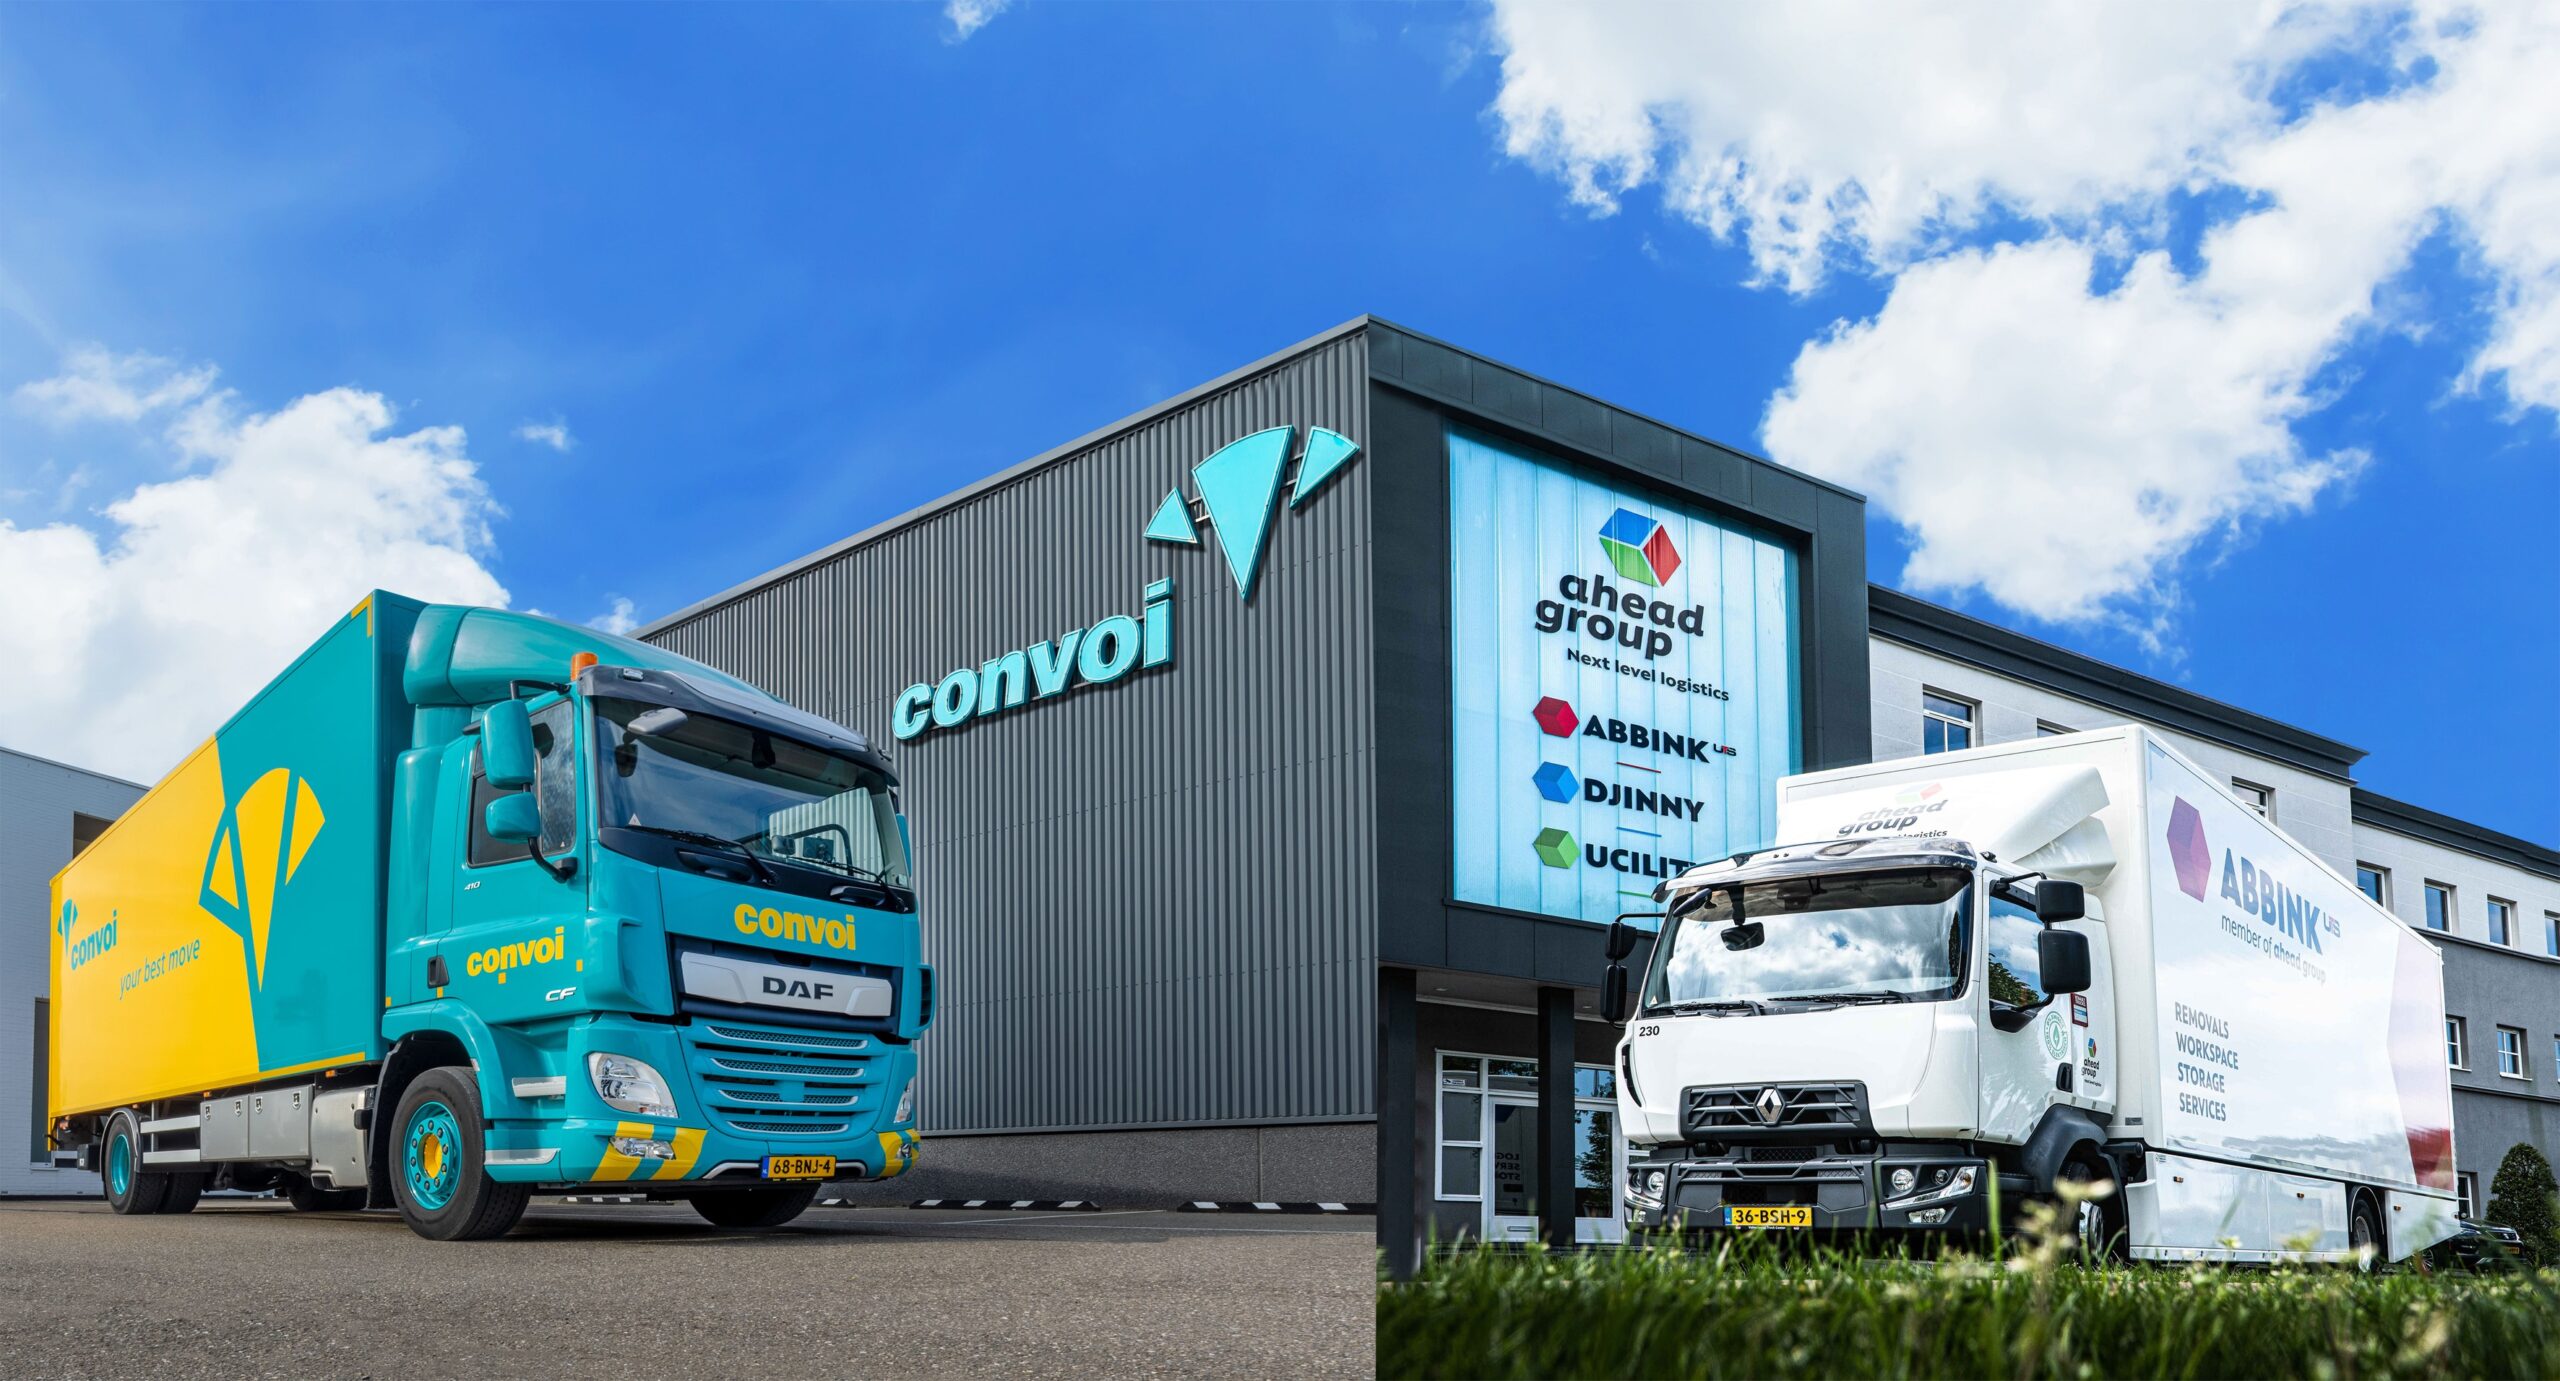 Convoi Projectverhuizingen neemt Ahead Group uit Den Haag over en wordt marktleider in Nederland